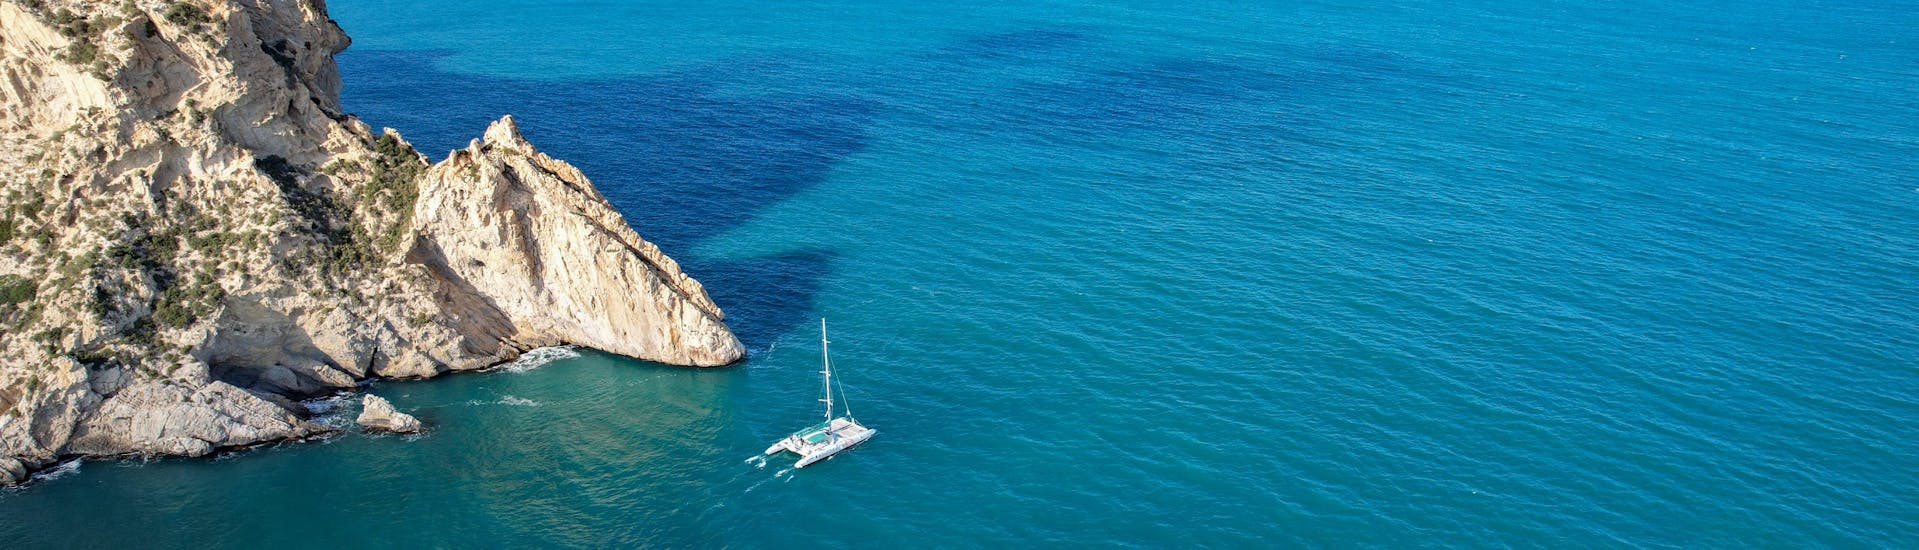 Catamarantocht van Calpe naar Cala El Racó met toeristische attracties.